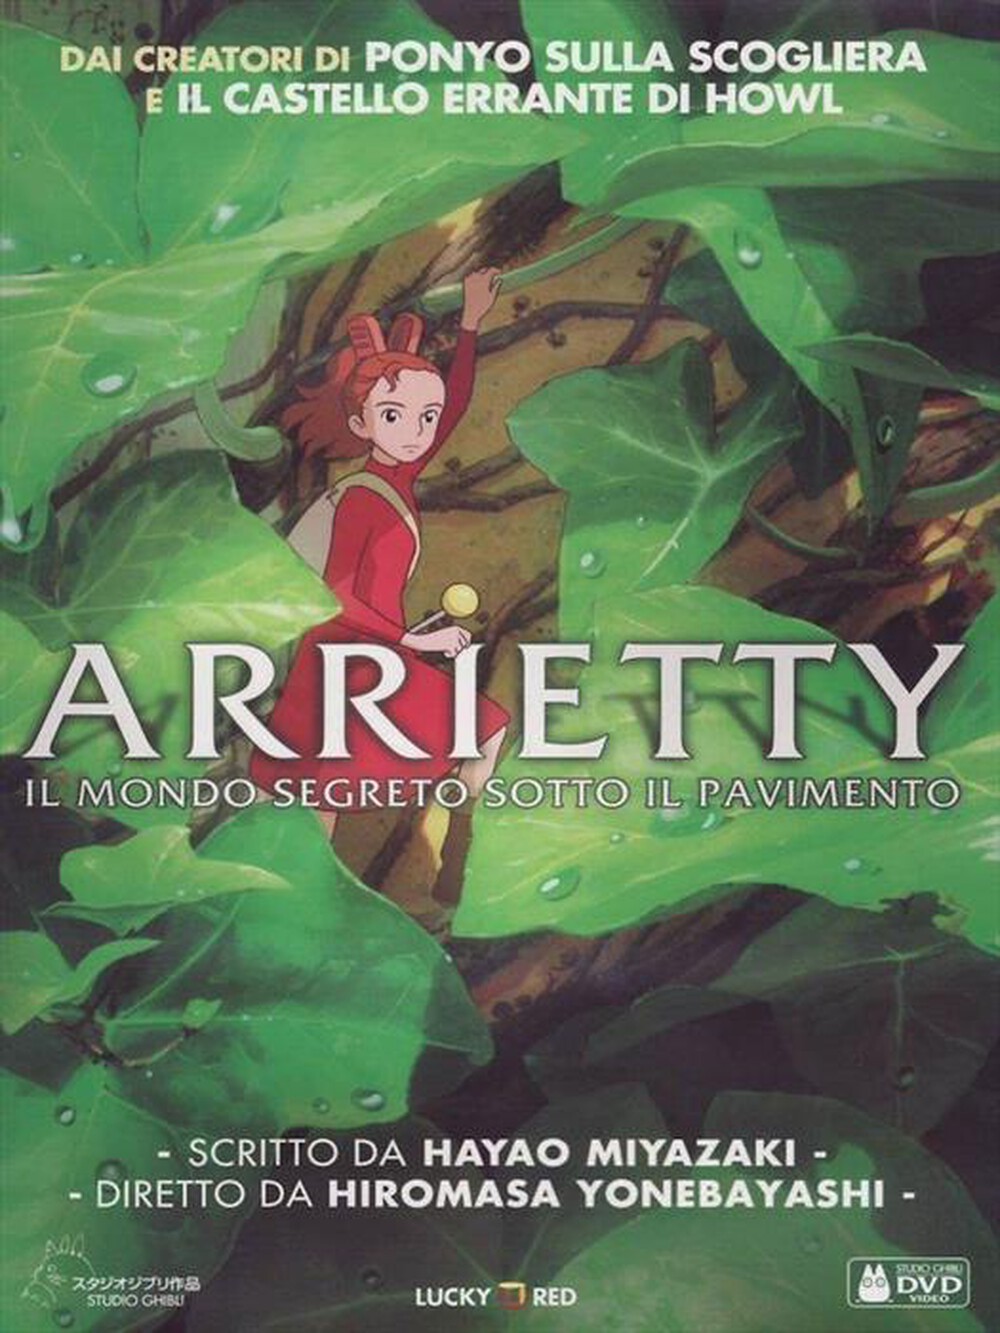 "WARNER HOME VIDEO - Arrietty - Il Mondo Segreto Sotto Il Pavimento"